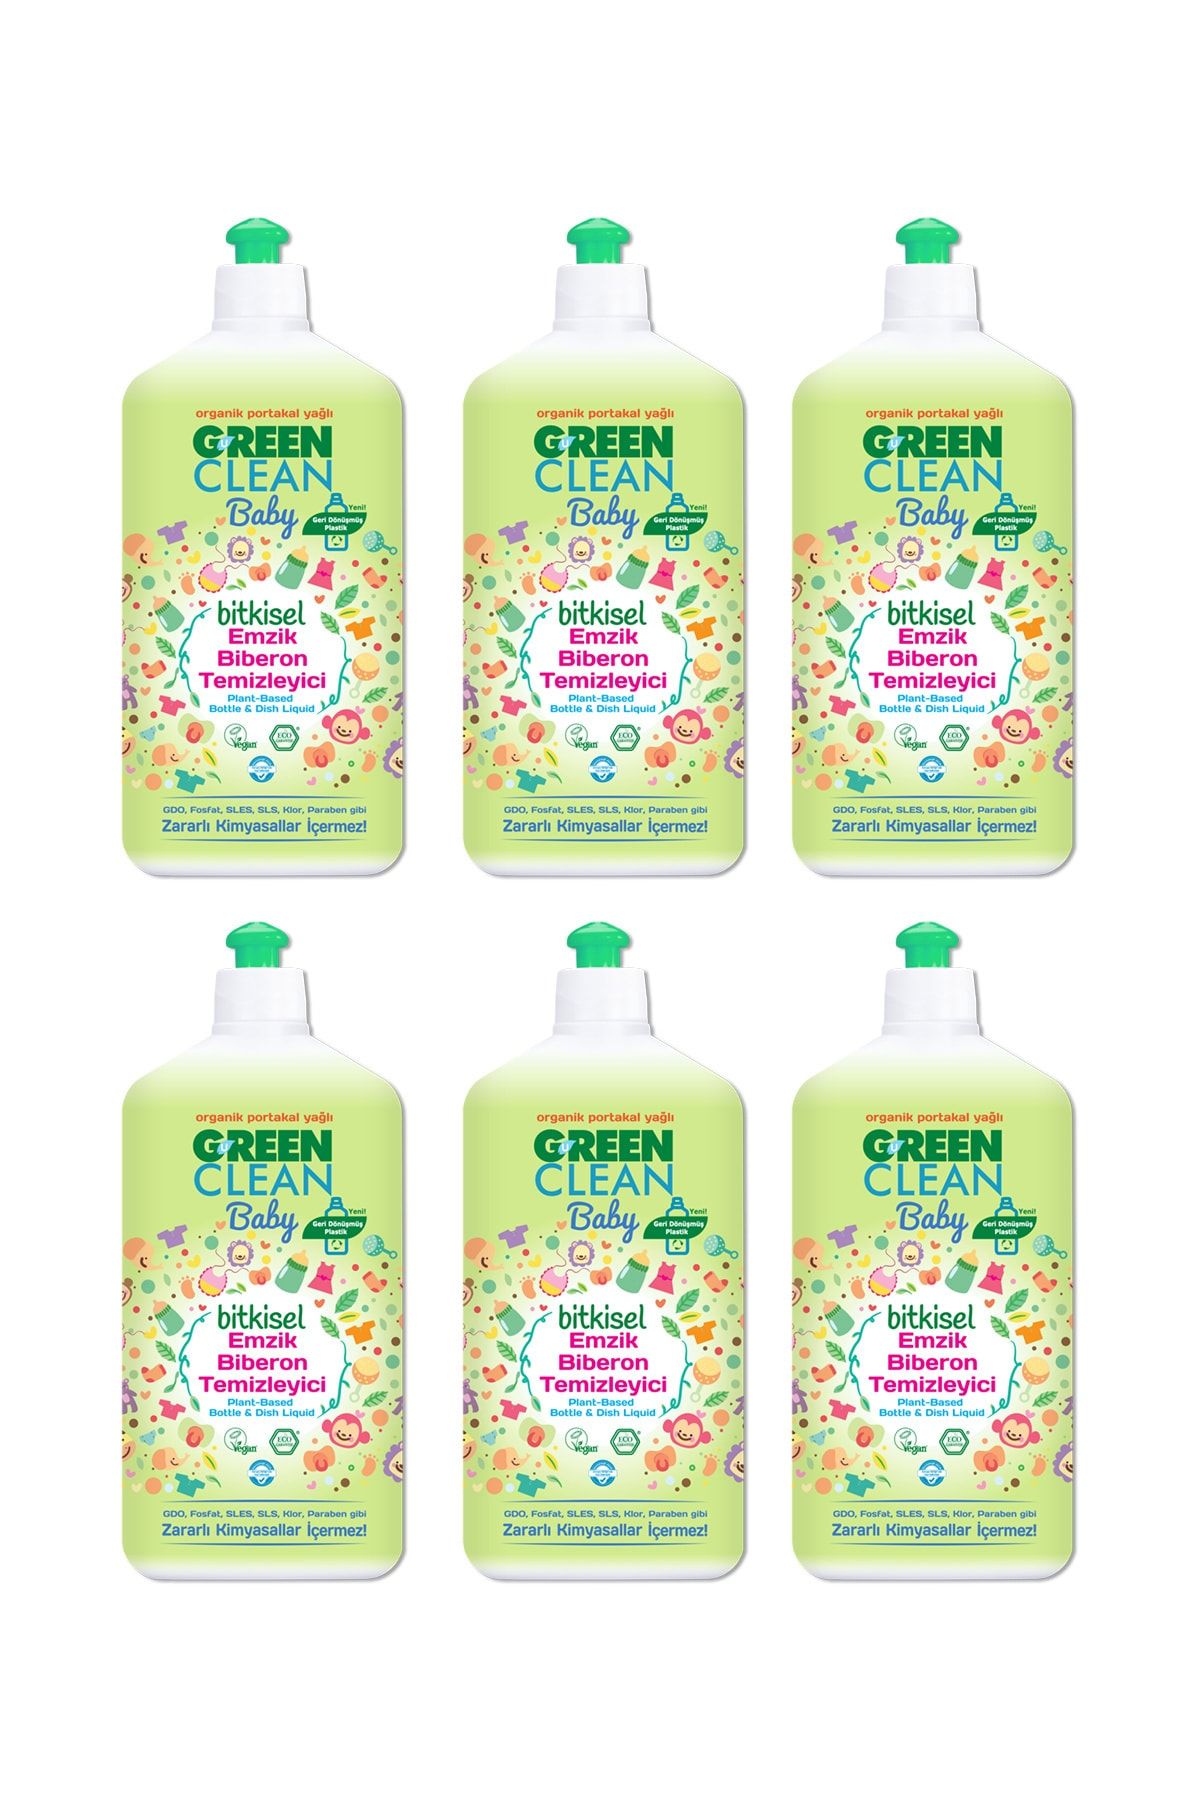 Green Clean Baby Organik Portakal Yağlı Bitkisel Emzik Biberon Temizleyici 500 ml 6'lı